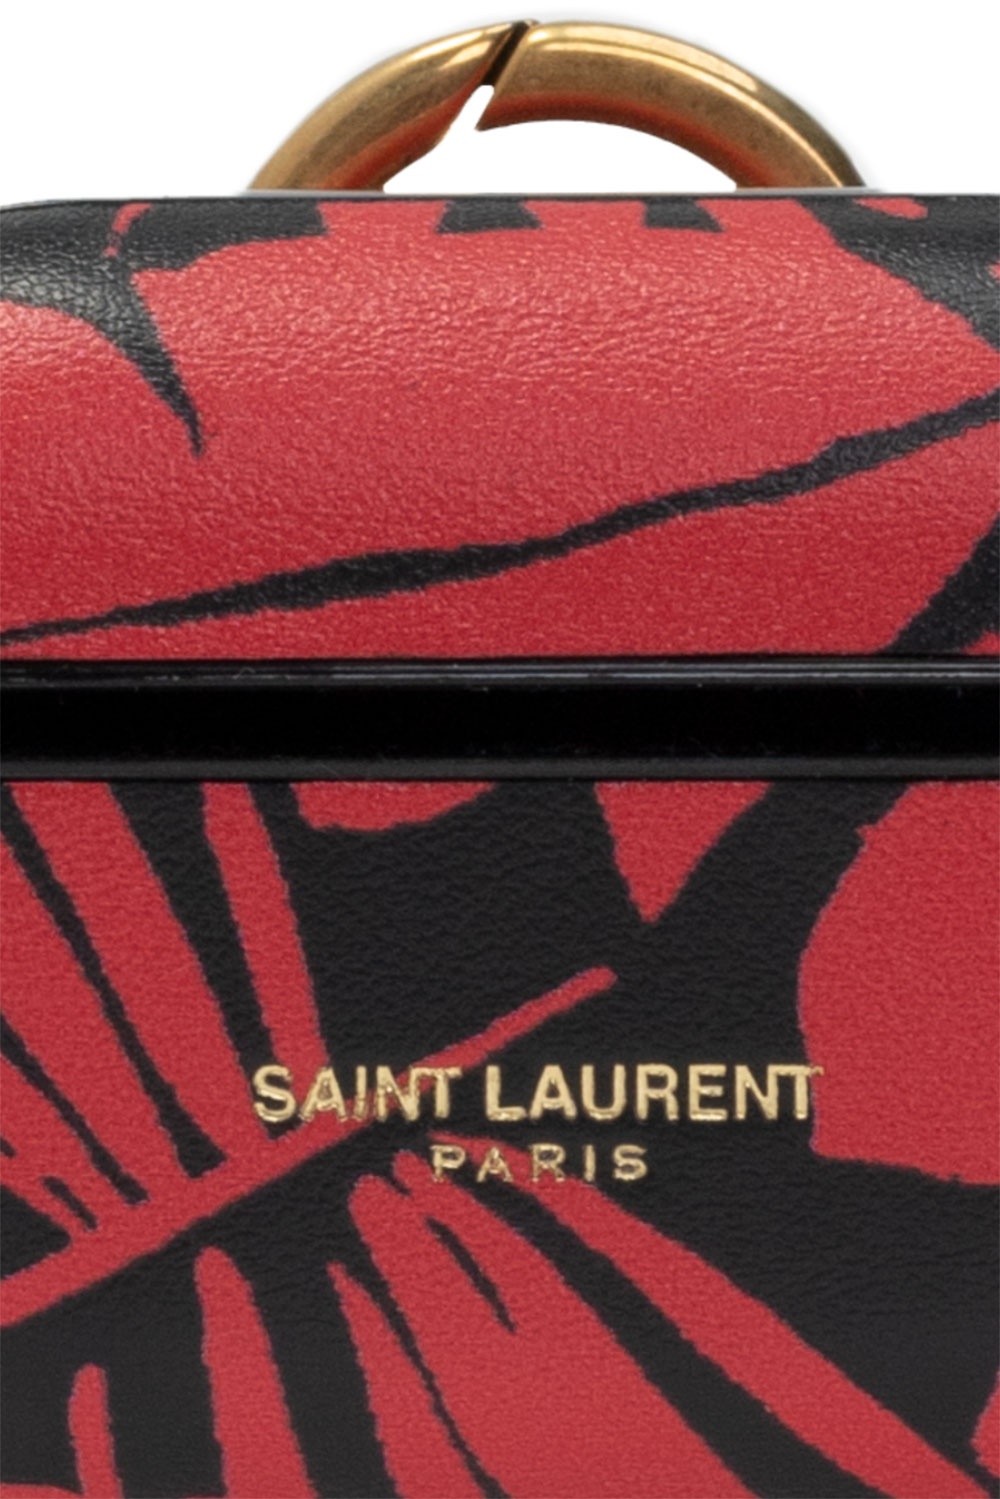 Saint Laurent saint laurent surf shorts